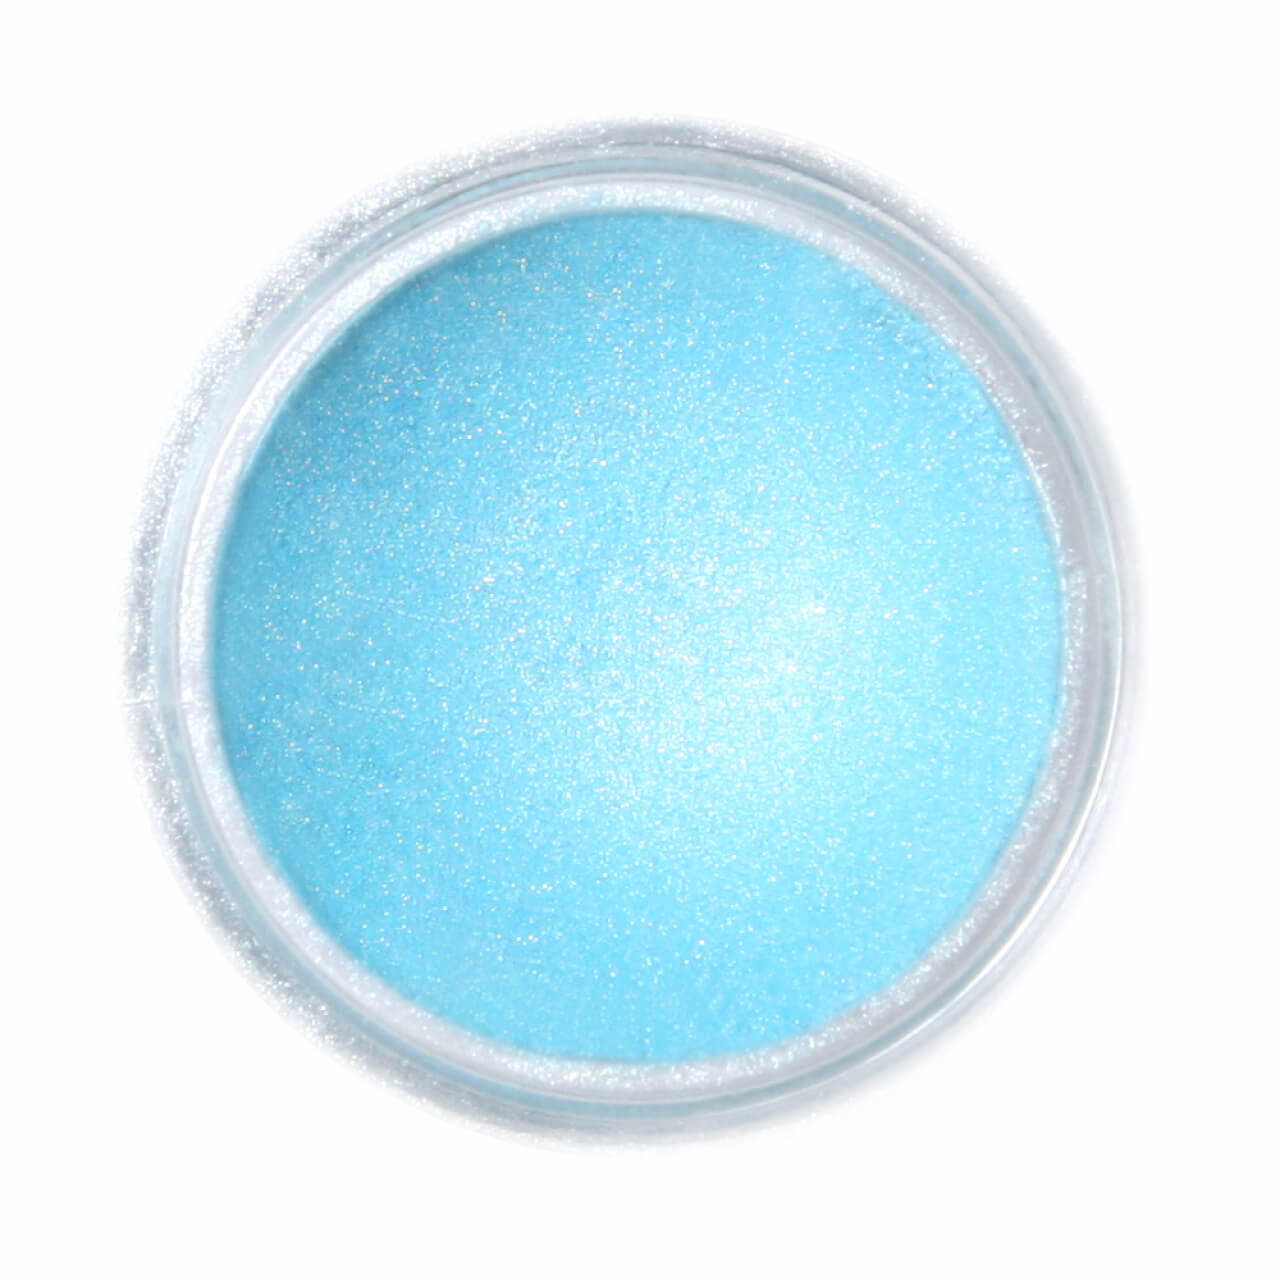 FRACTAL - Supearl Ételdekorációs Selyempor - Jégkristály Kék ( Frozen Blue ) - 2,5g